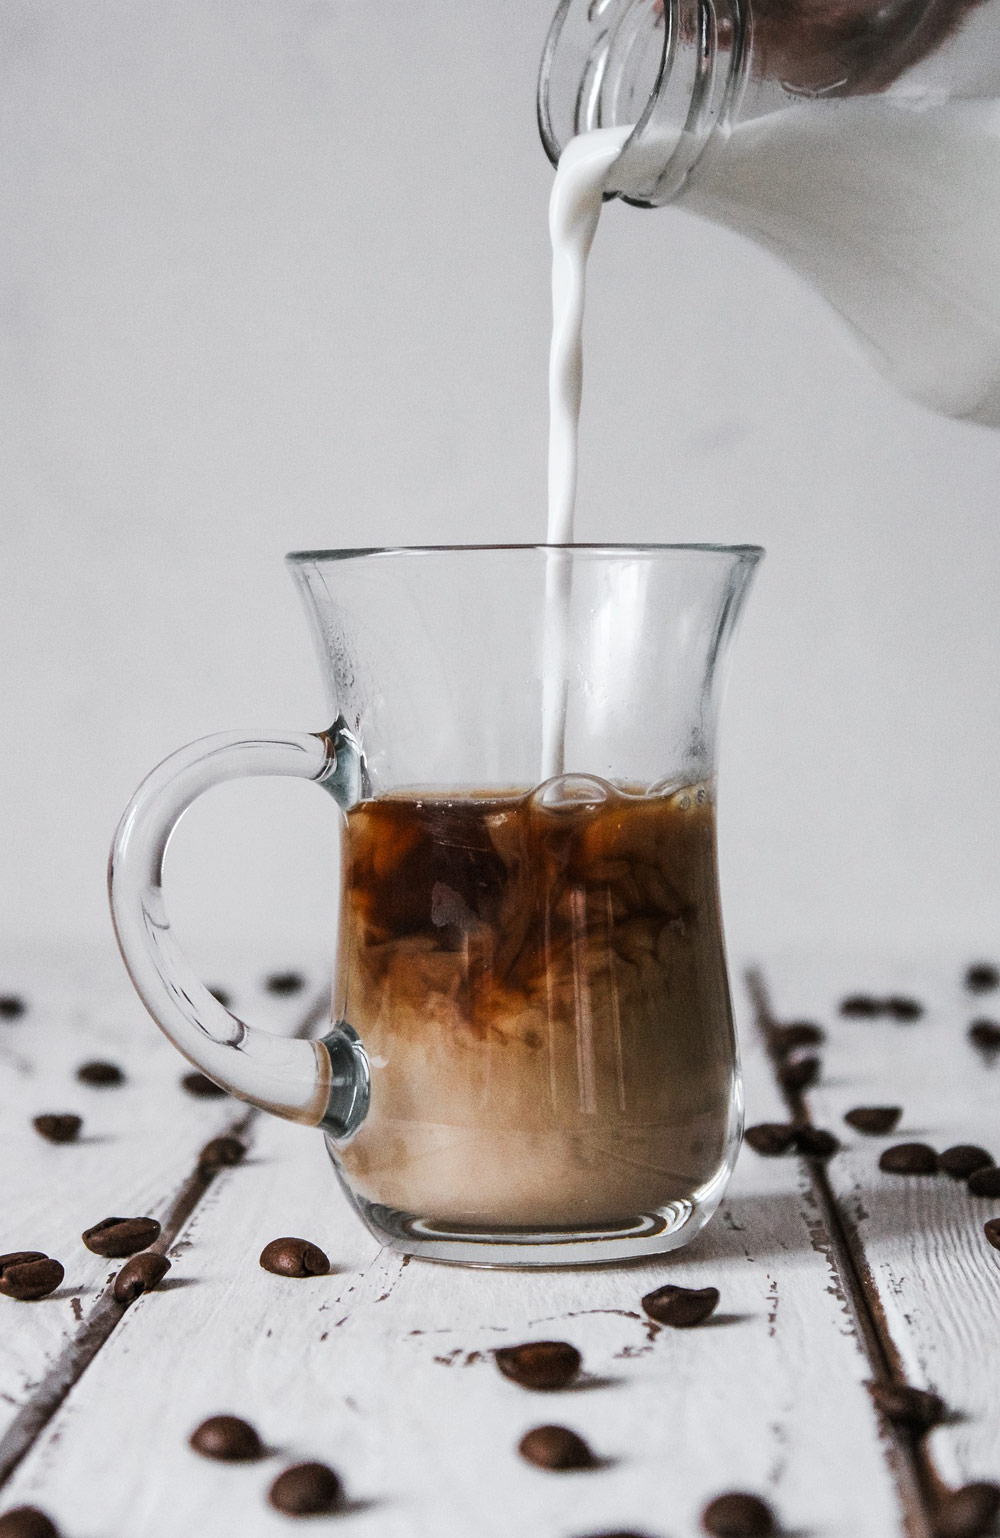 greixos de la llet en el cafè